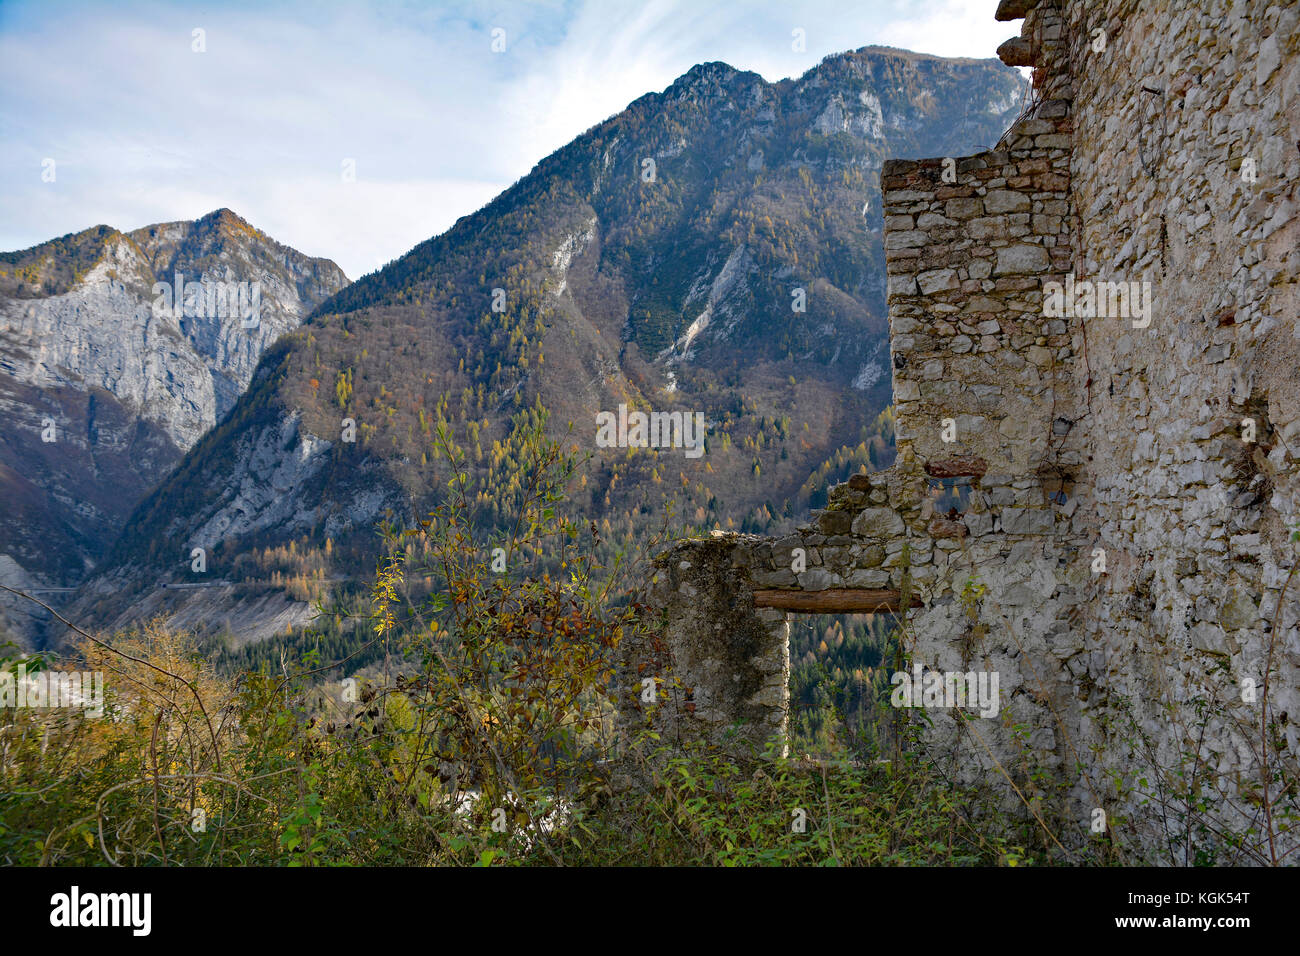 Im Herbst Landschaft um den kleinen Hügel Dorf erto in Friaul-Julisch Venetien, im Nordosten Italiens. Stockfoto